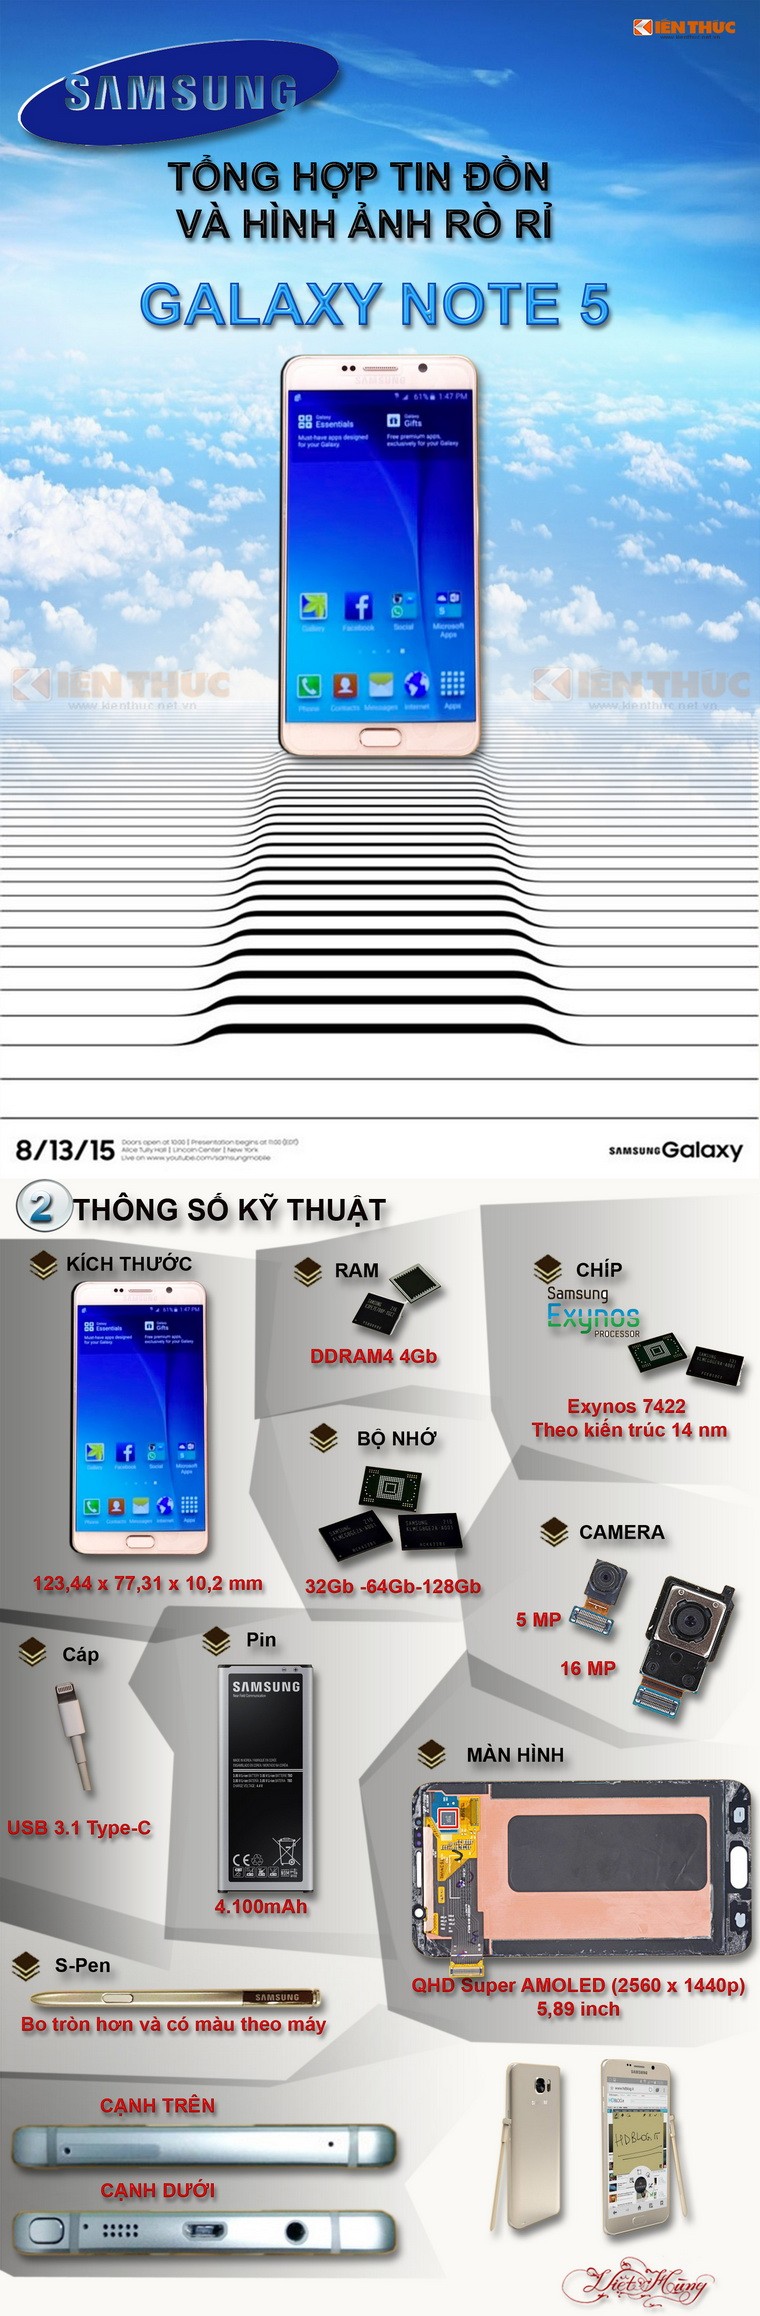 Infographic: Tong hop tin don, hinh anh ro ri Galaxy Note 5